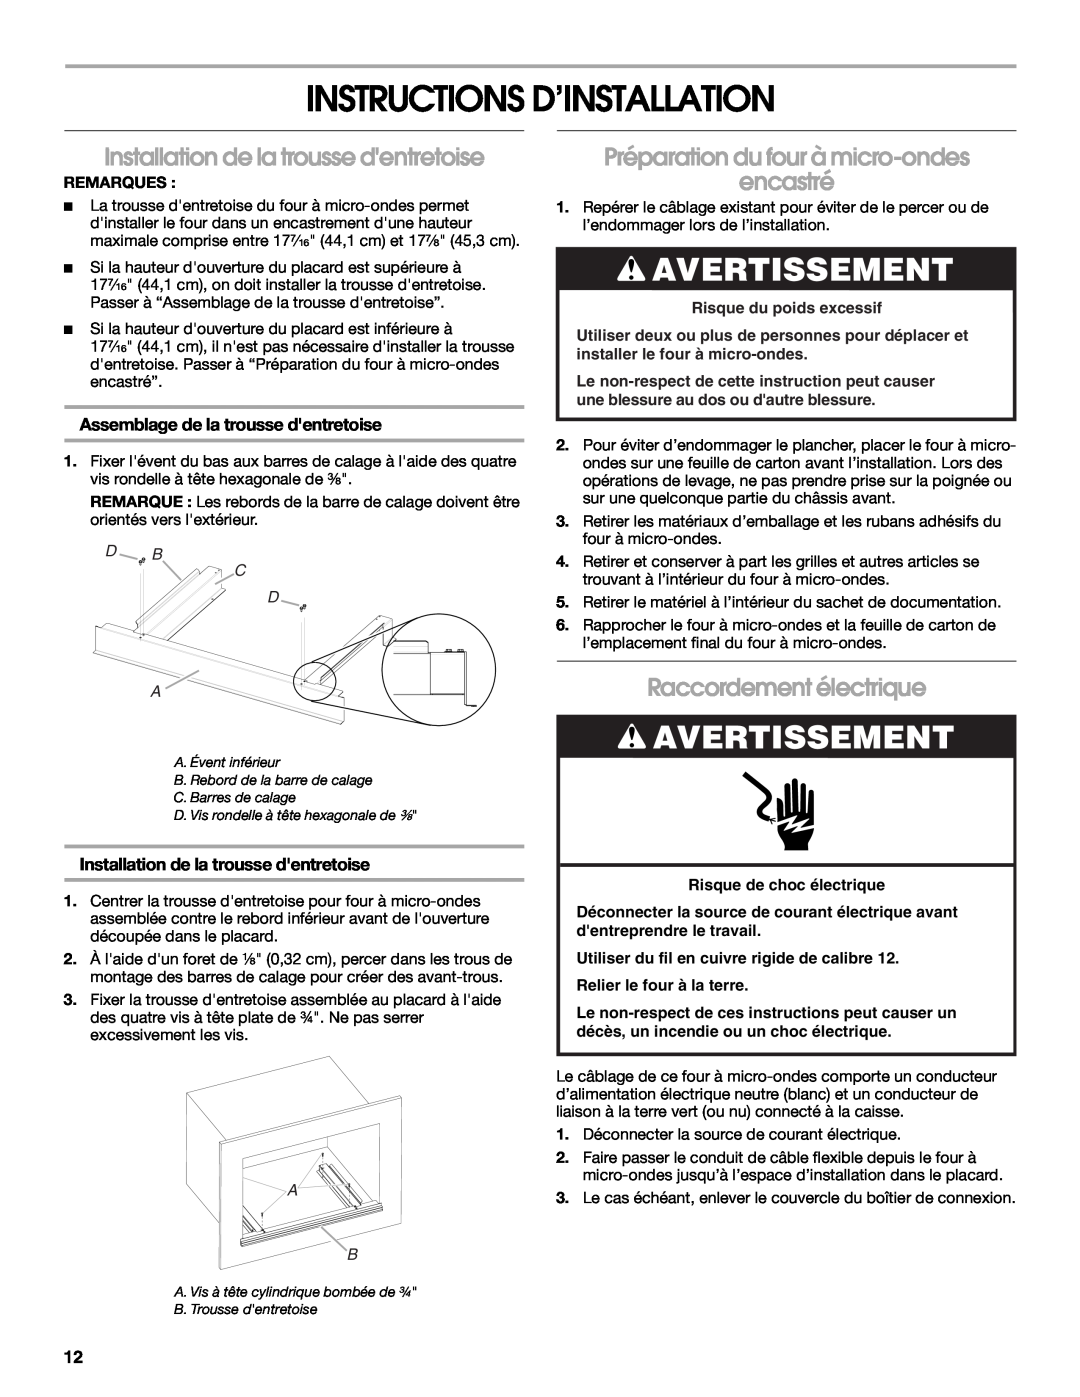 KitchenAid W10351317A Instructions D’Installation, Avertissement, Installation de la trousse dentretoise, Remarques 